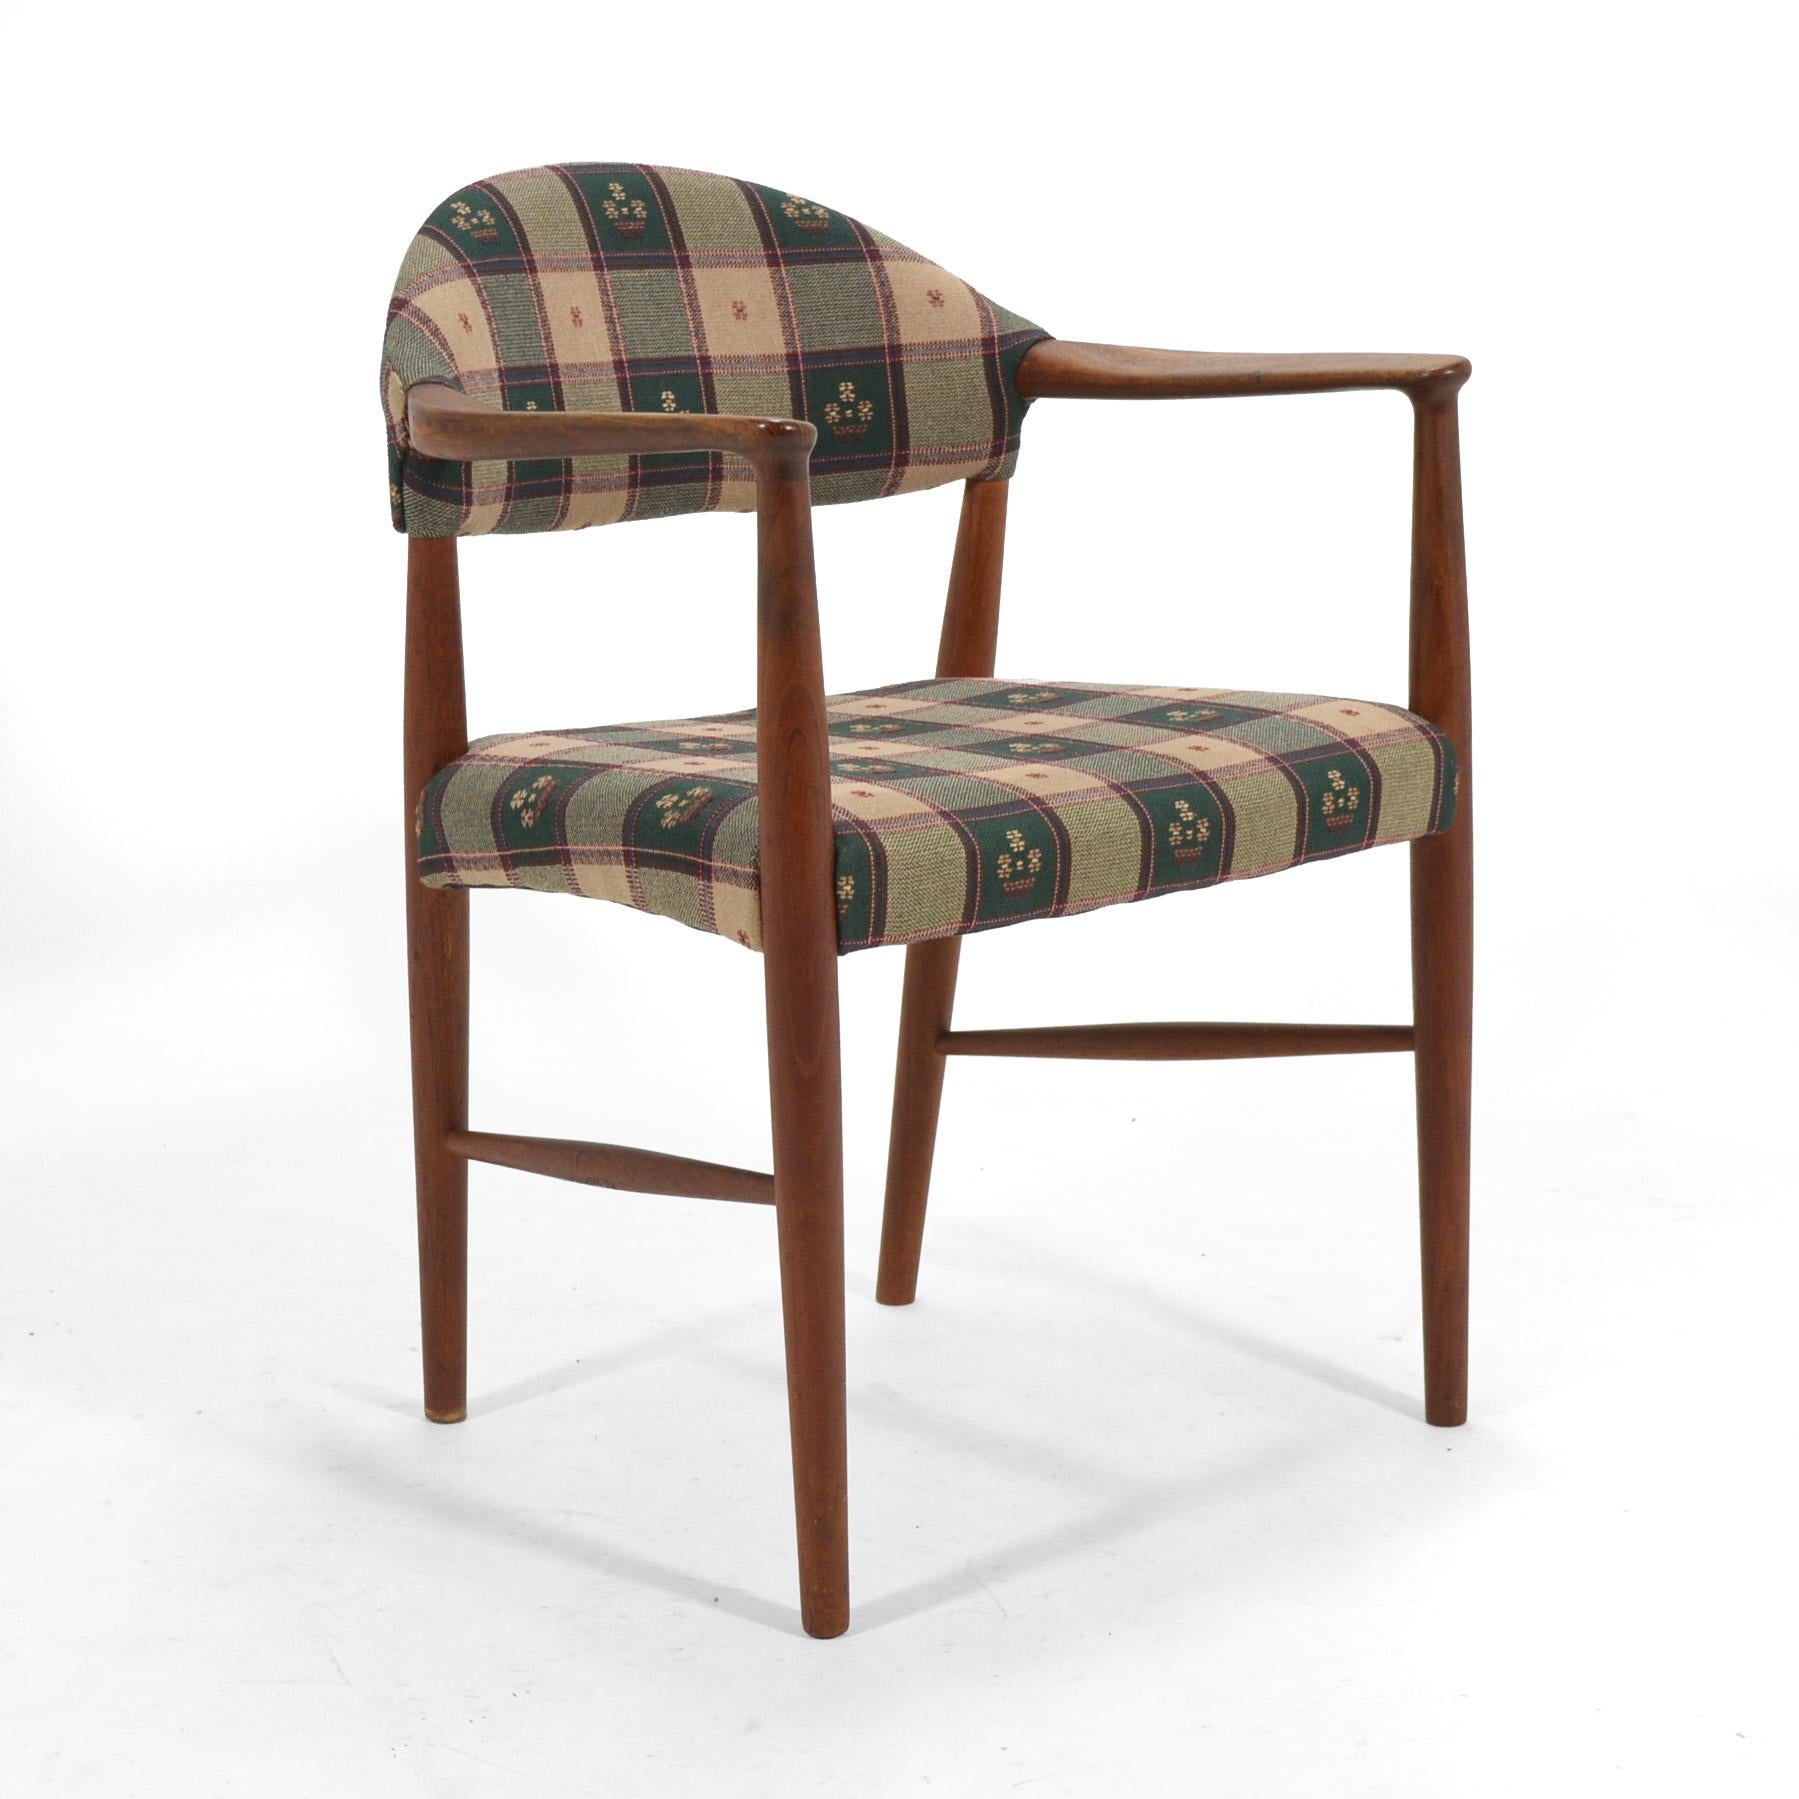 Conçu par Kurt Olsen pour Slagelse Møbelværk en 1955, ce fauteuil modèle 223 est un design discret et intemporel. Fabriqué en teck, il a conservé son revêtement d'origine en tissu tissé à la main, mais il serait également spectaculaire s'il était